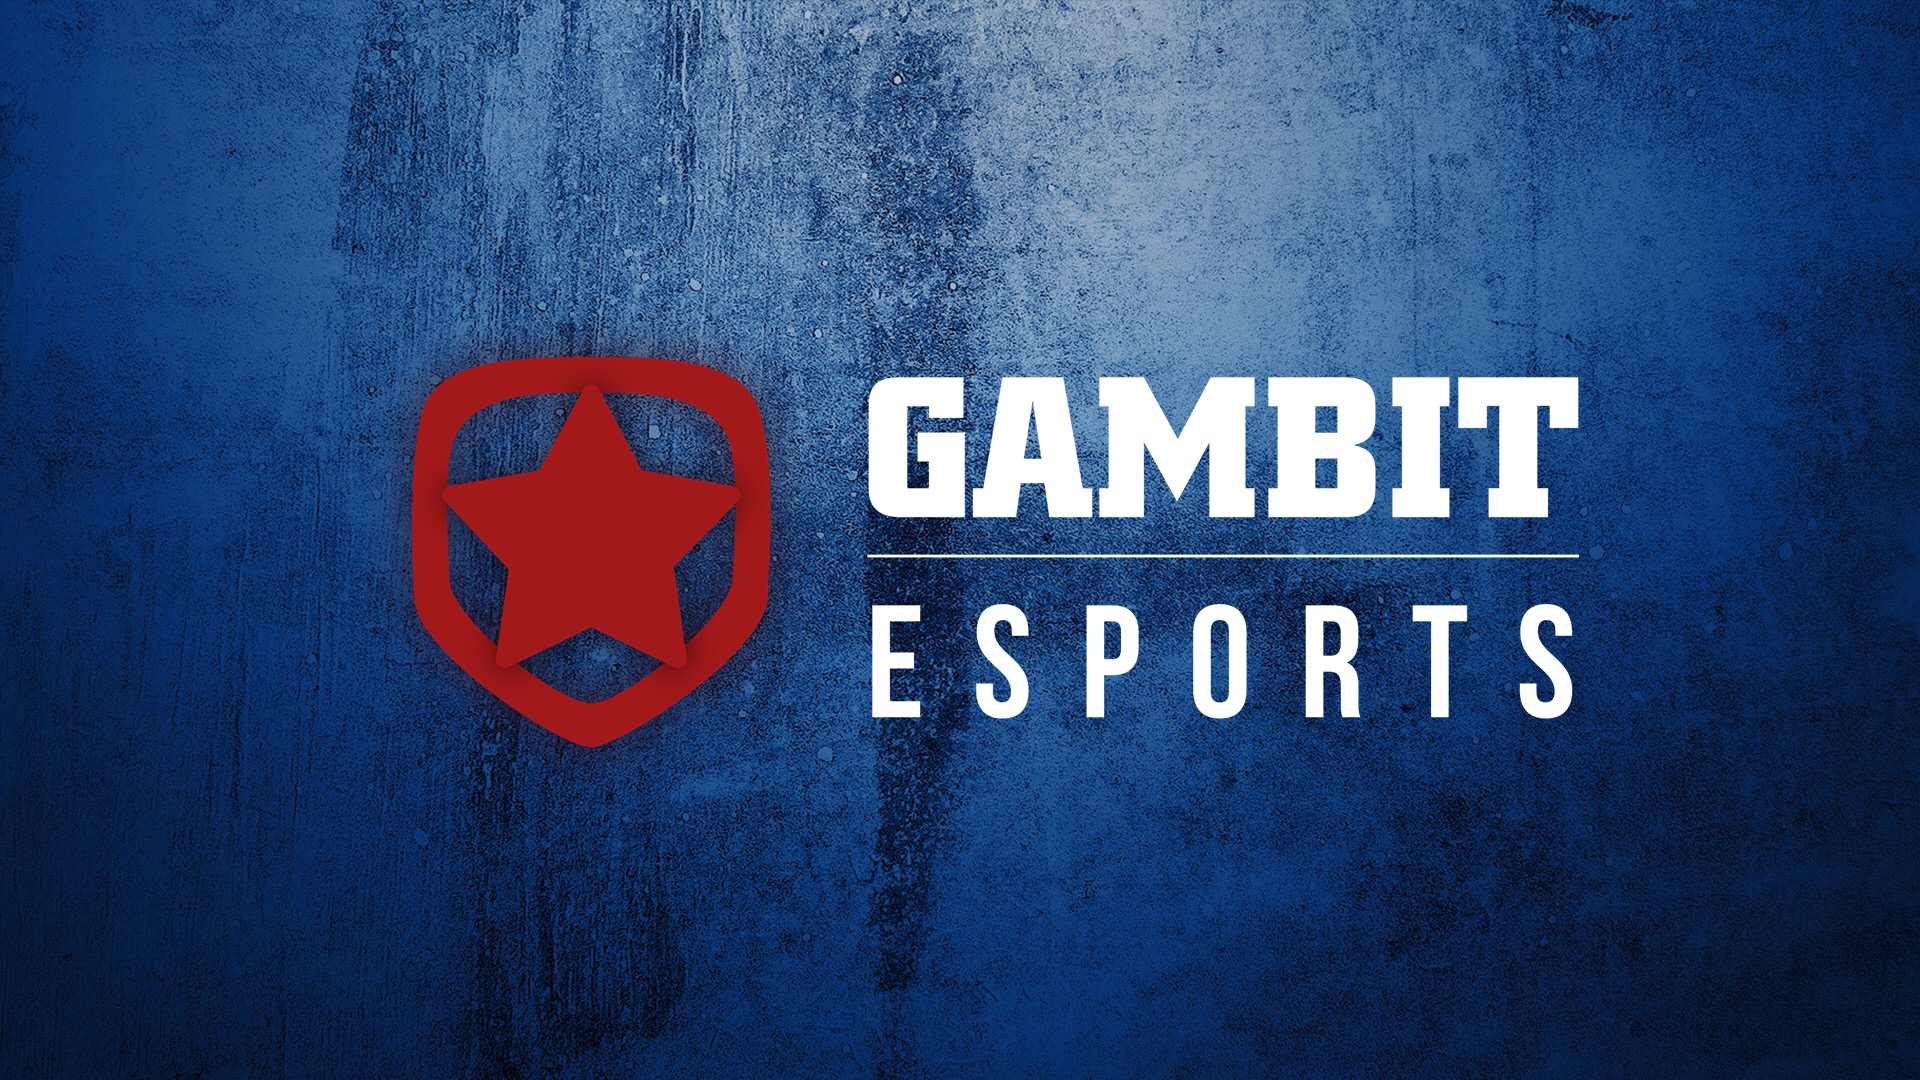 Ростер Gambit Esports по CS:GO выставлен на продажу